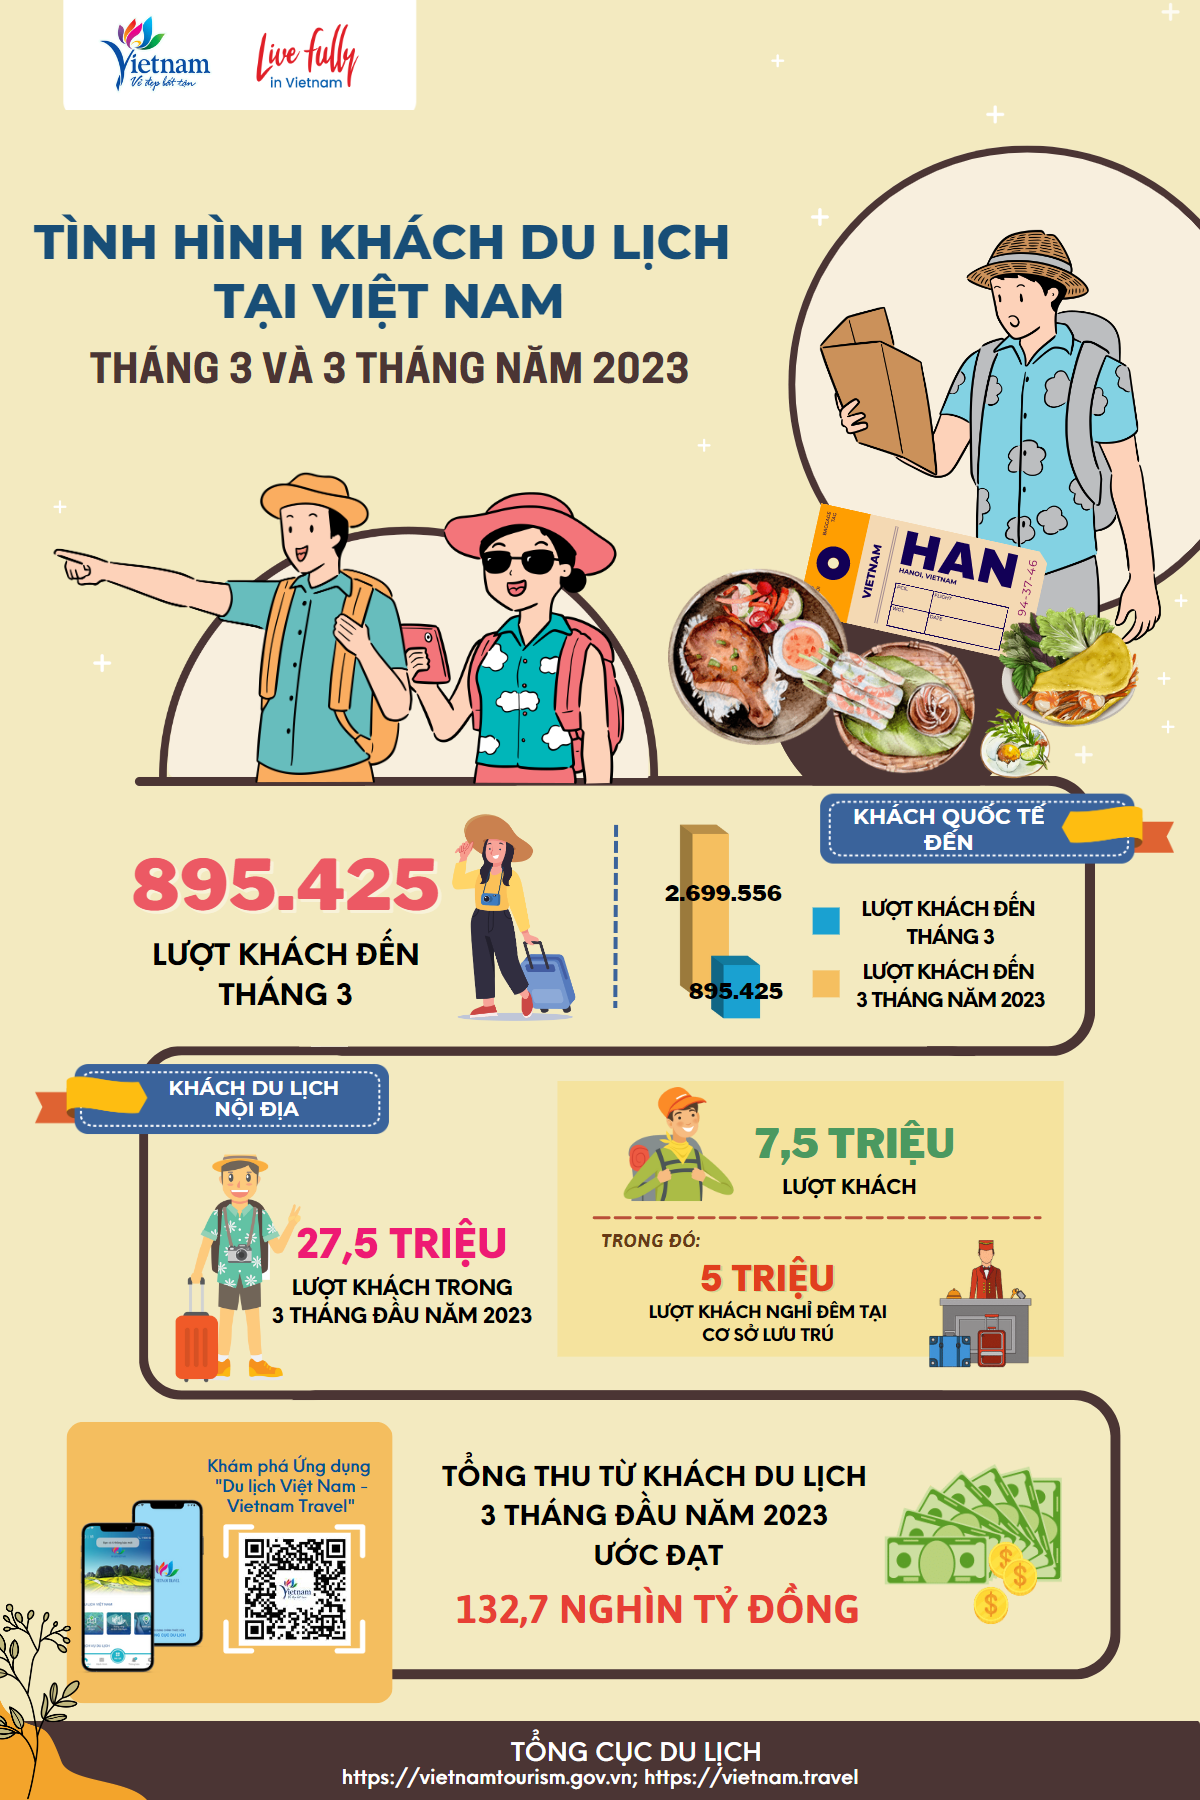 [Infographic] Tình hình khách du lịch tháng 3 năm 2023